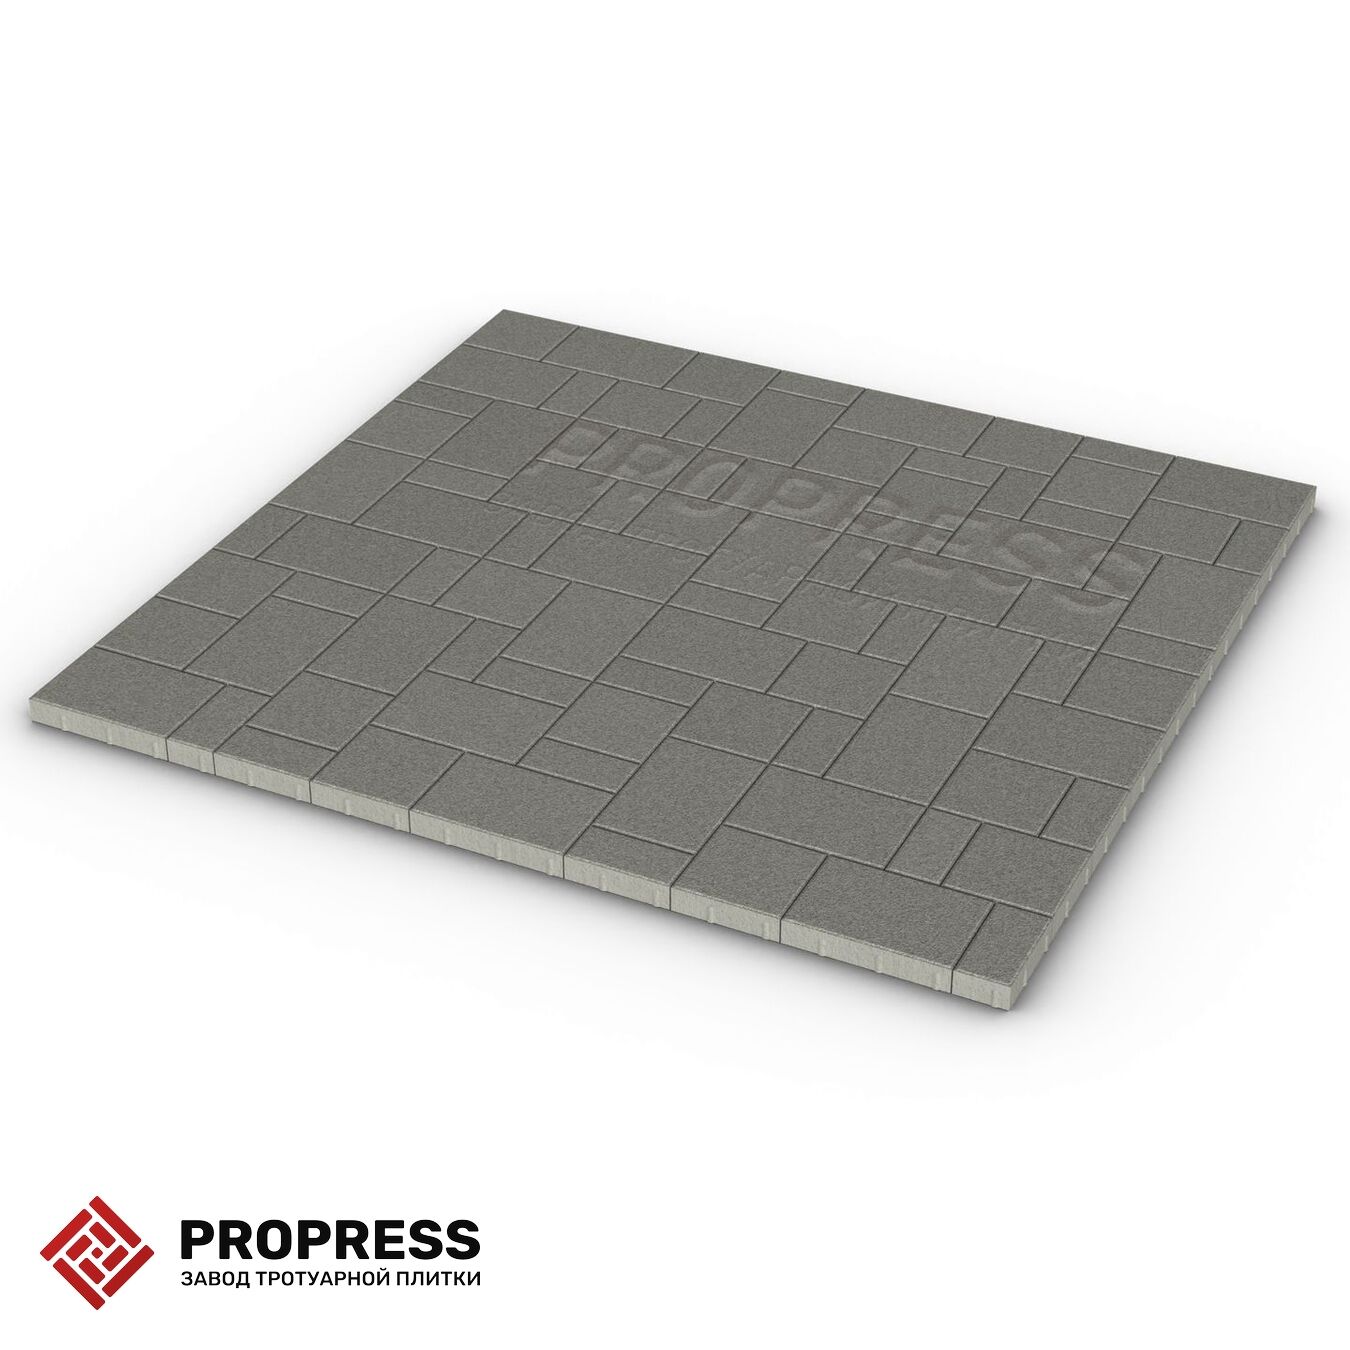 Тротуарная плитка Пропресс Лэндхаус Серый мрамор 40 мм